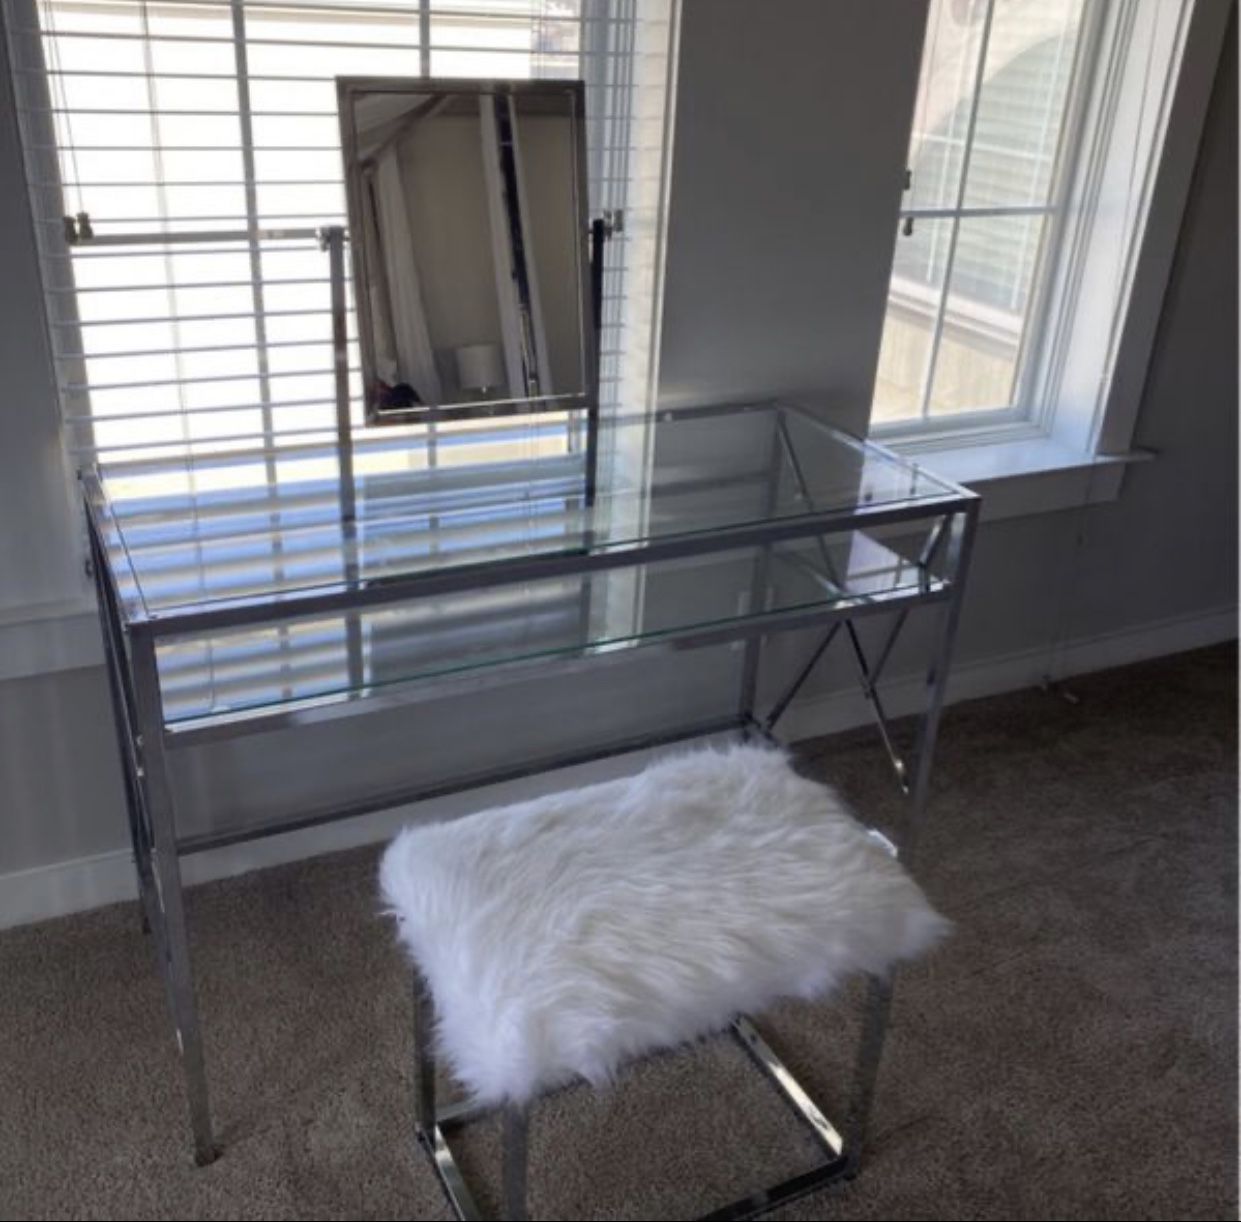 Mazzone vanity set wit mirror and stool..